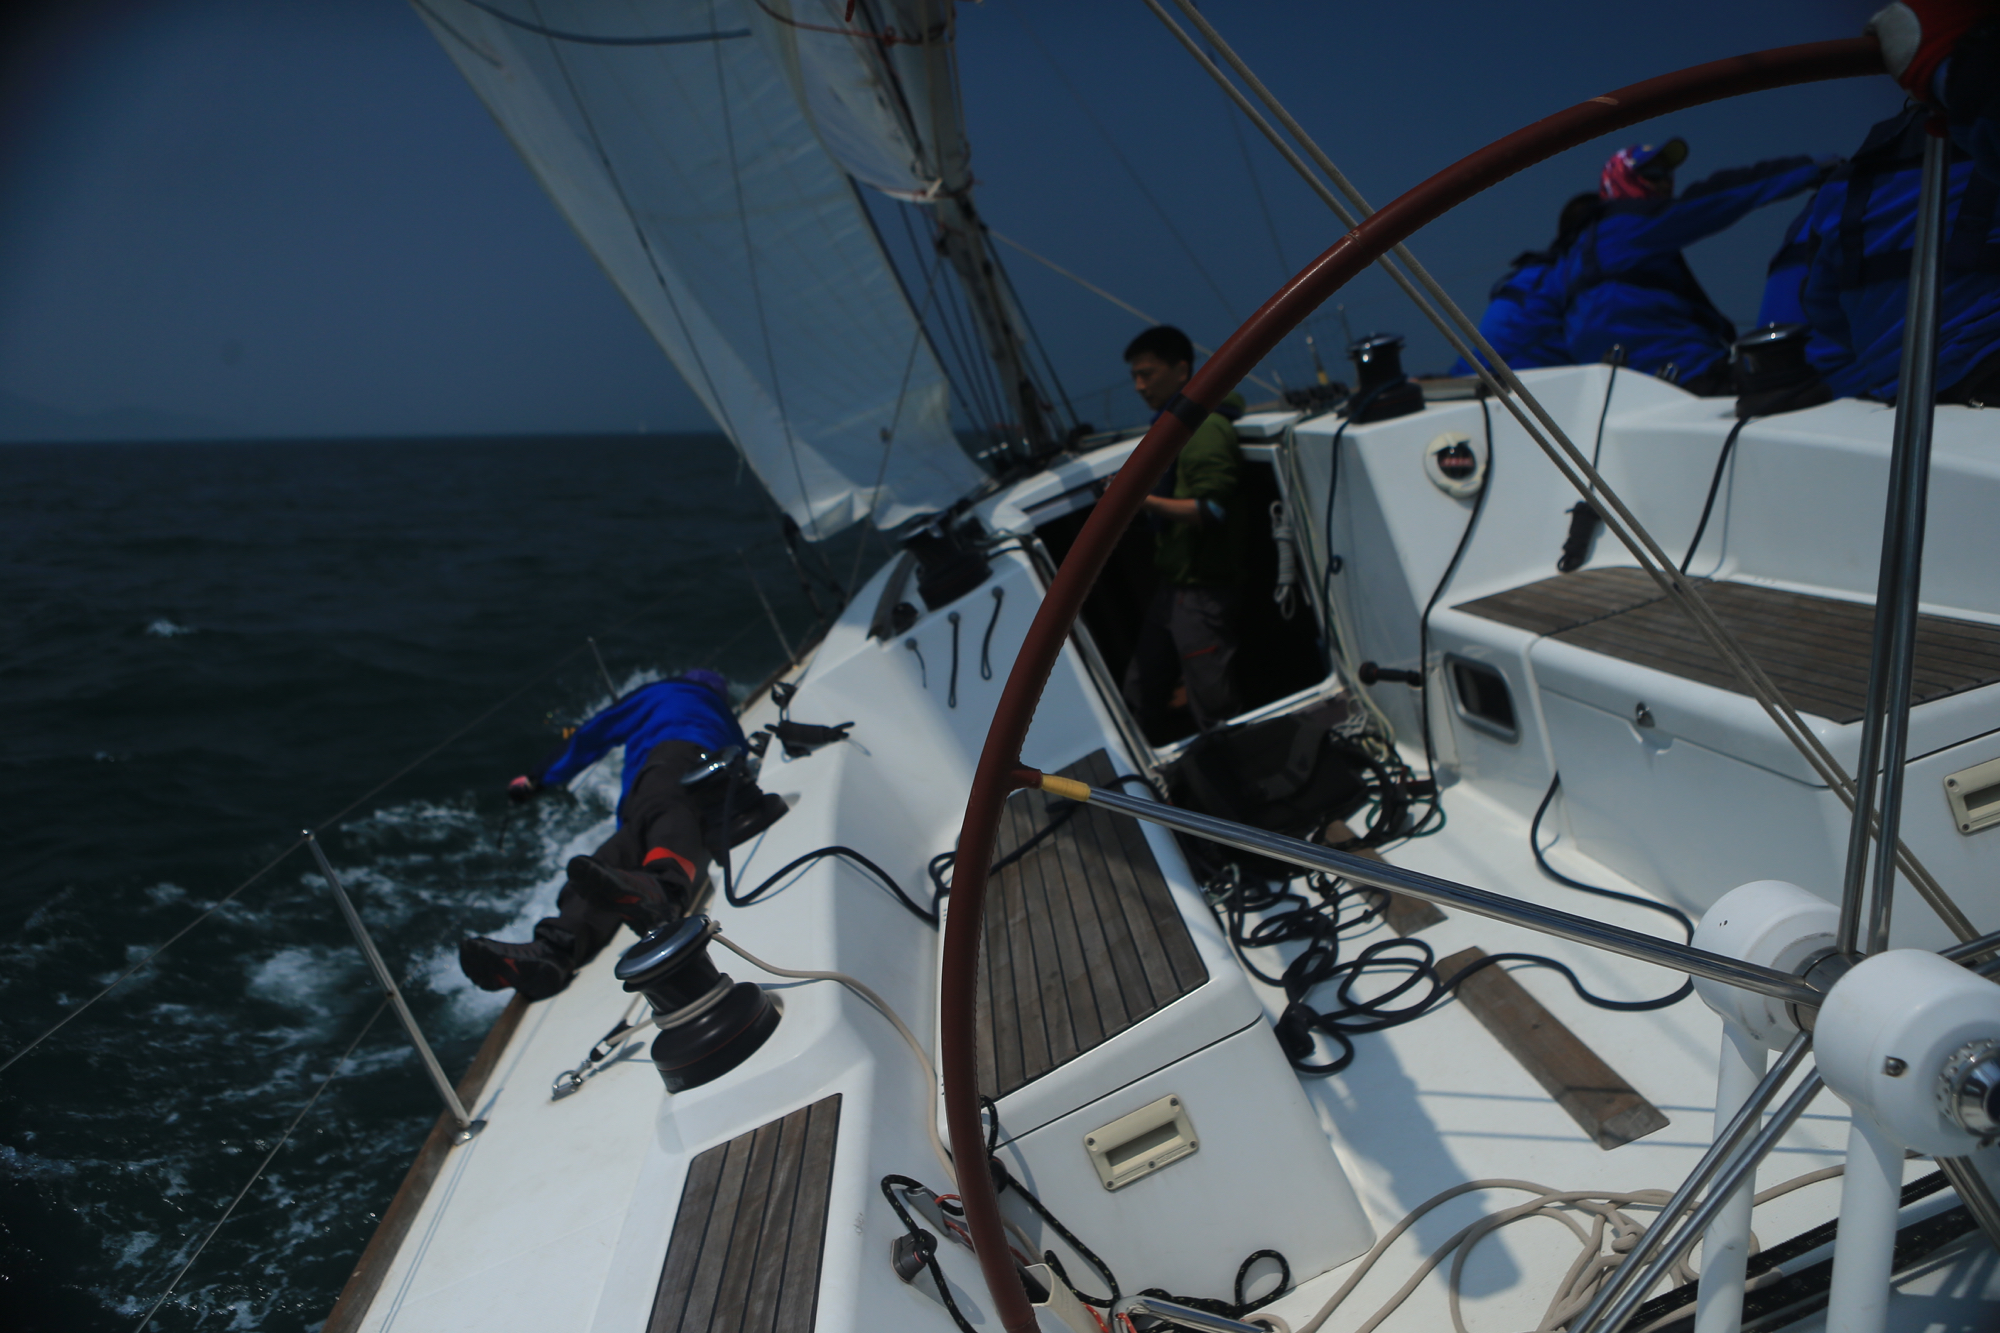 我要航海网帆船队-2015-CCOR - 059.jpg